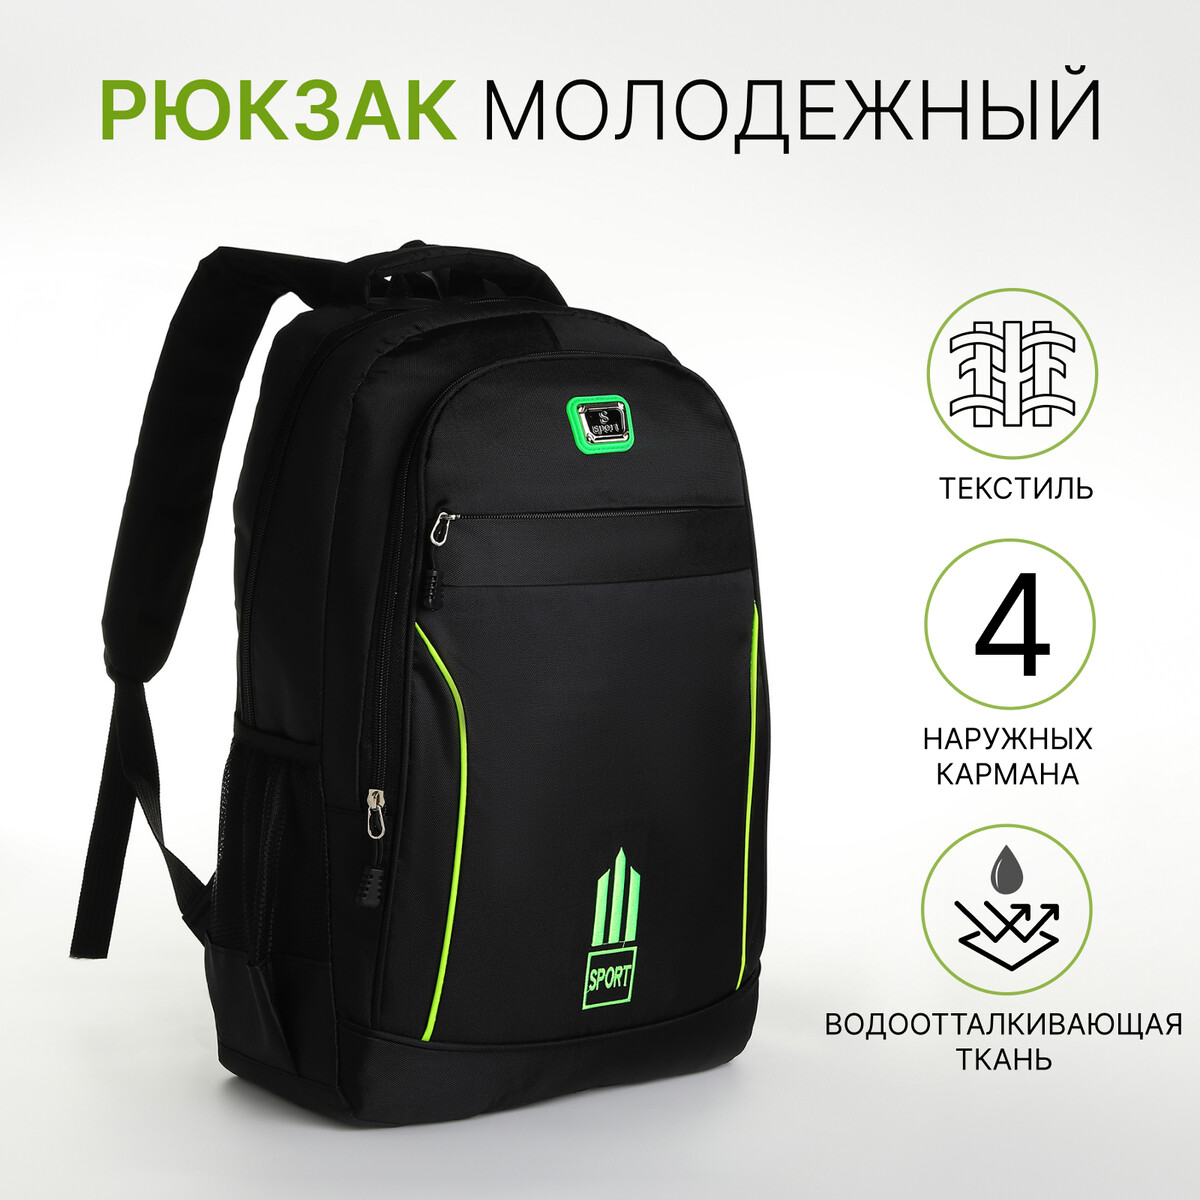 Рюкзак молодежный из текстиля на молнии, 4 кармана, цвет черный/зеленый